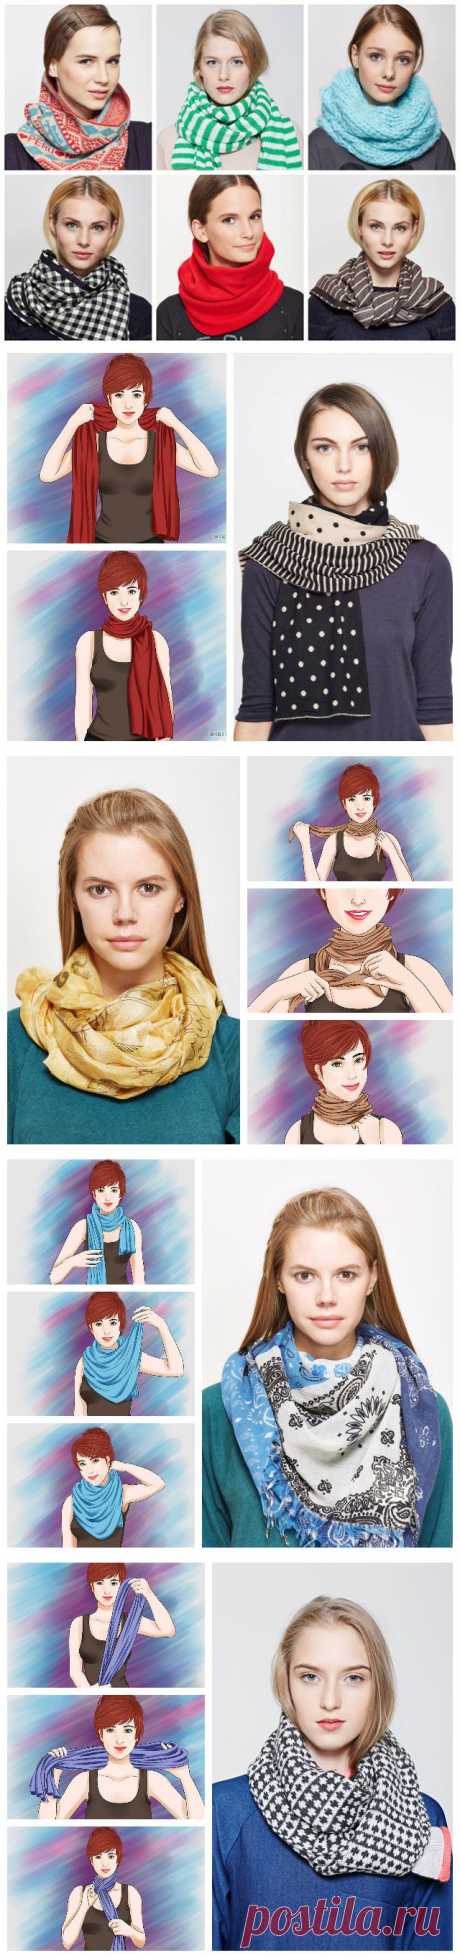 Семь способов носить шарф | Красота спасает мир